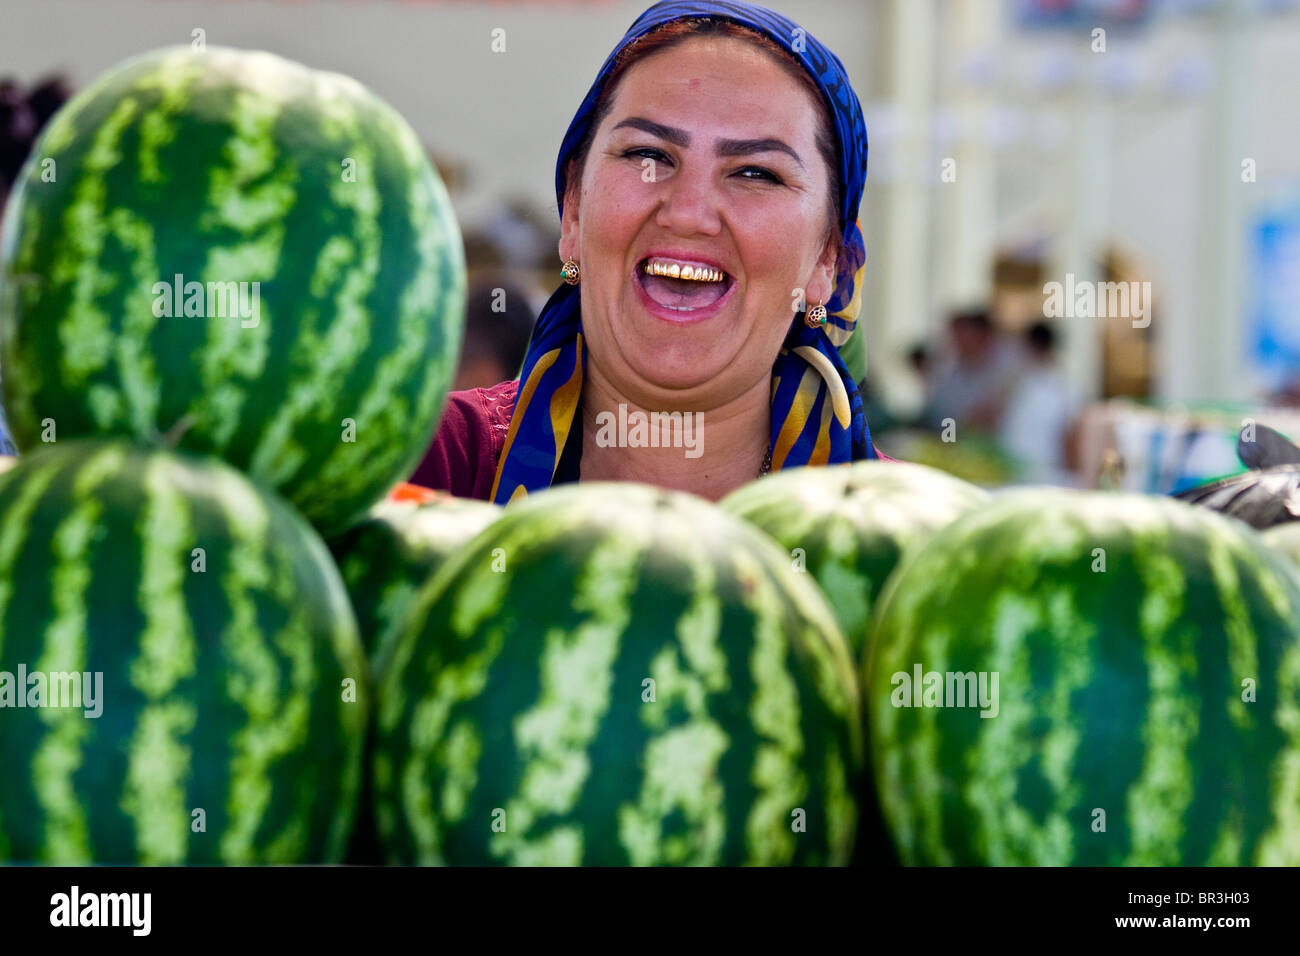 Watermelon vendor at the bazaar in Bukhara, Uzbekistan Stock Photo